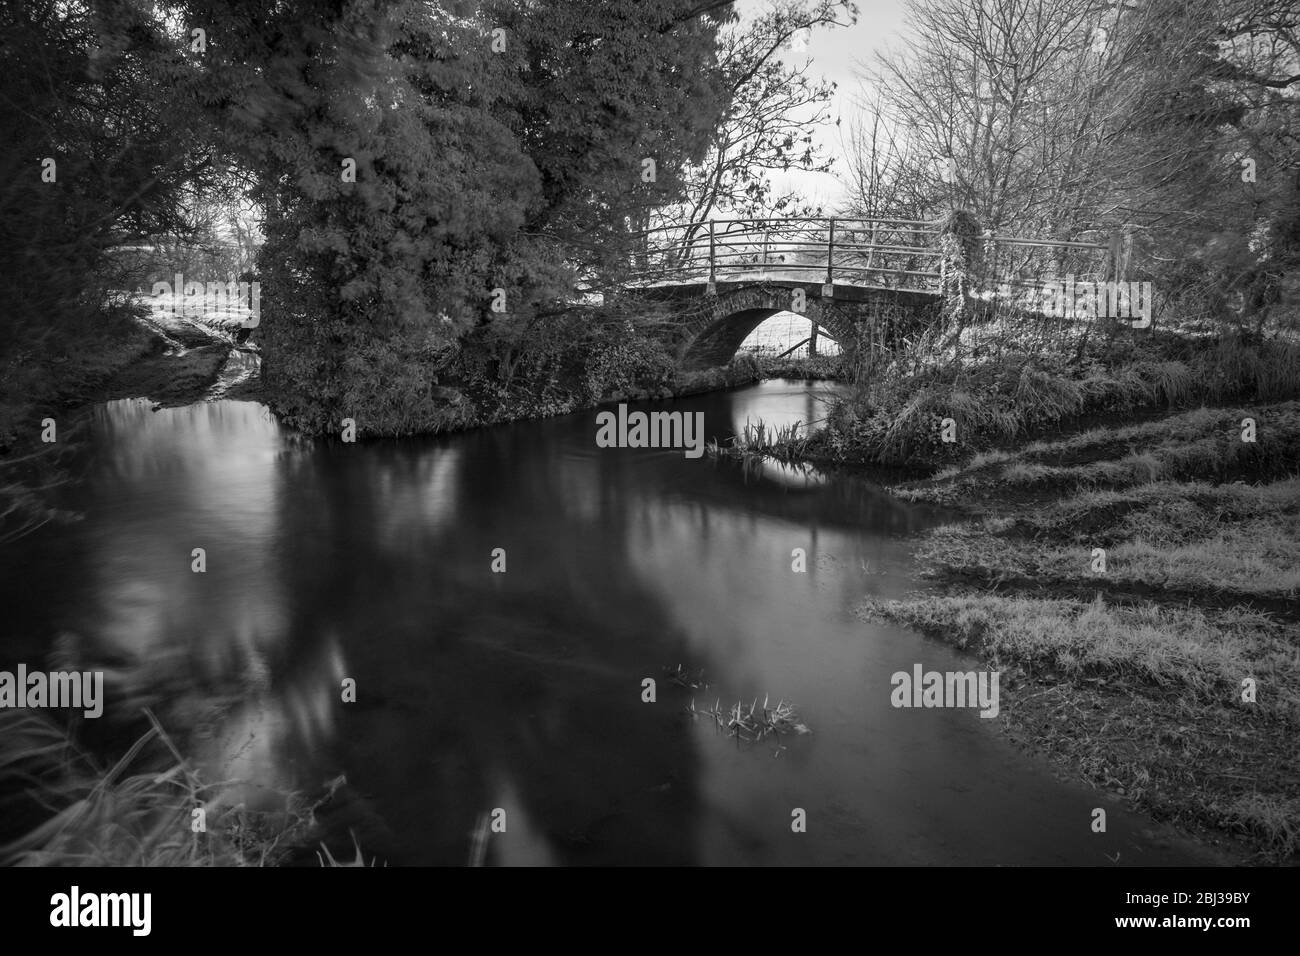 Puente peatonal de ladrillo sobre el río Stiffkey, Norfolk, Inglaterra. Imagen infrarroja en blanco y negro. Foto de stock